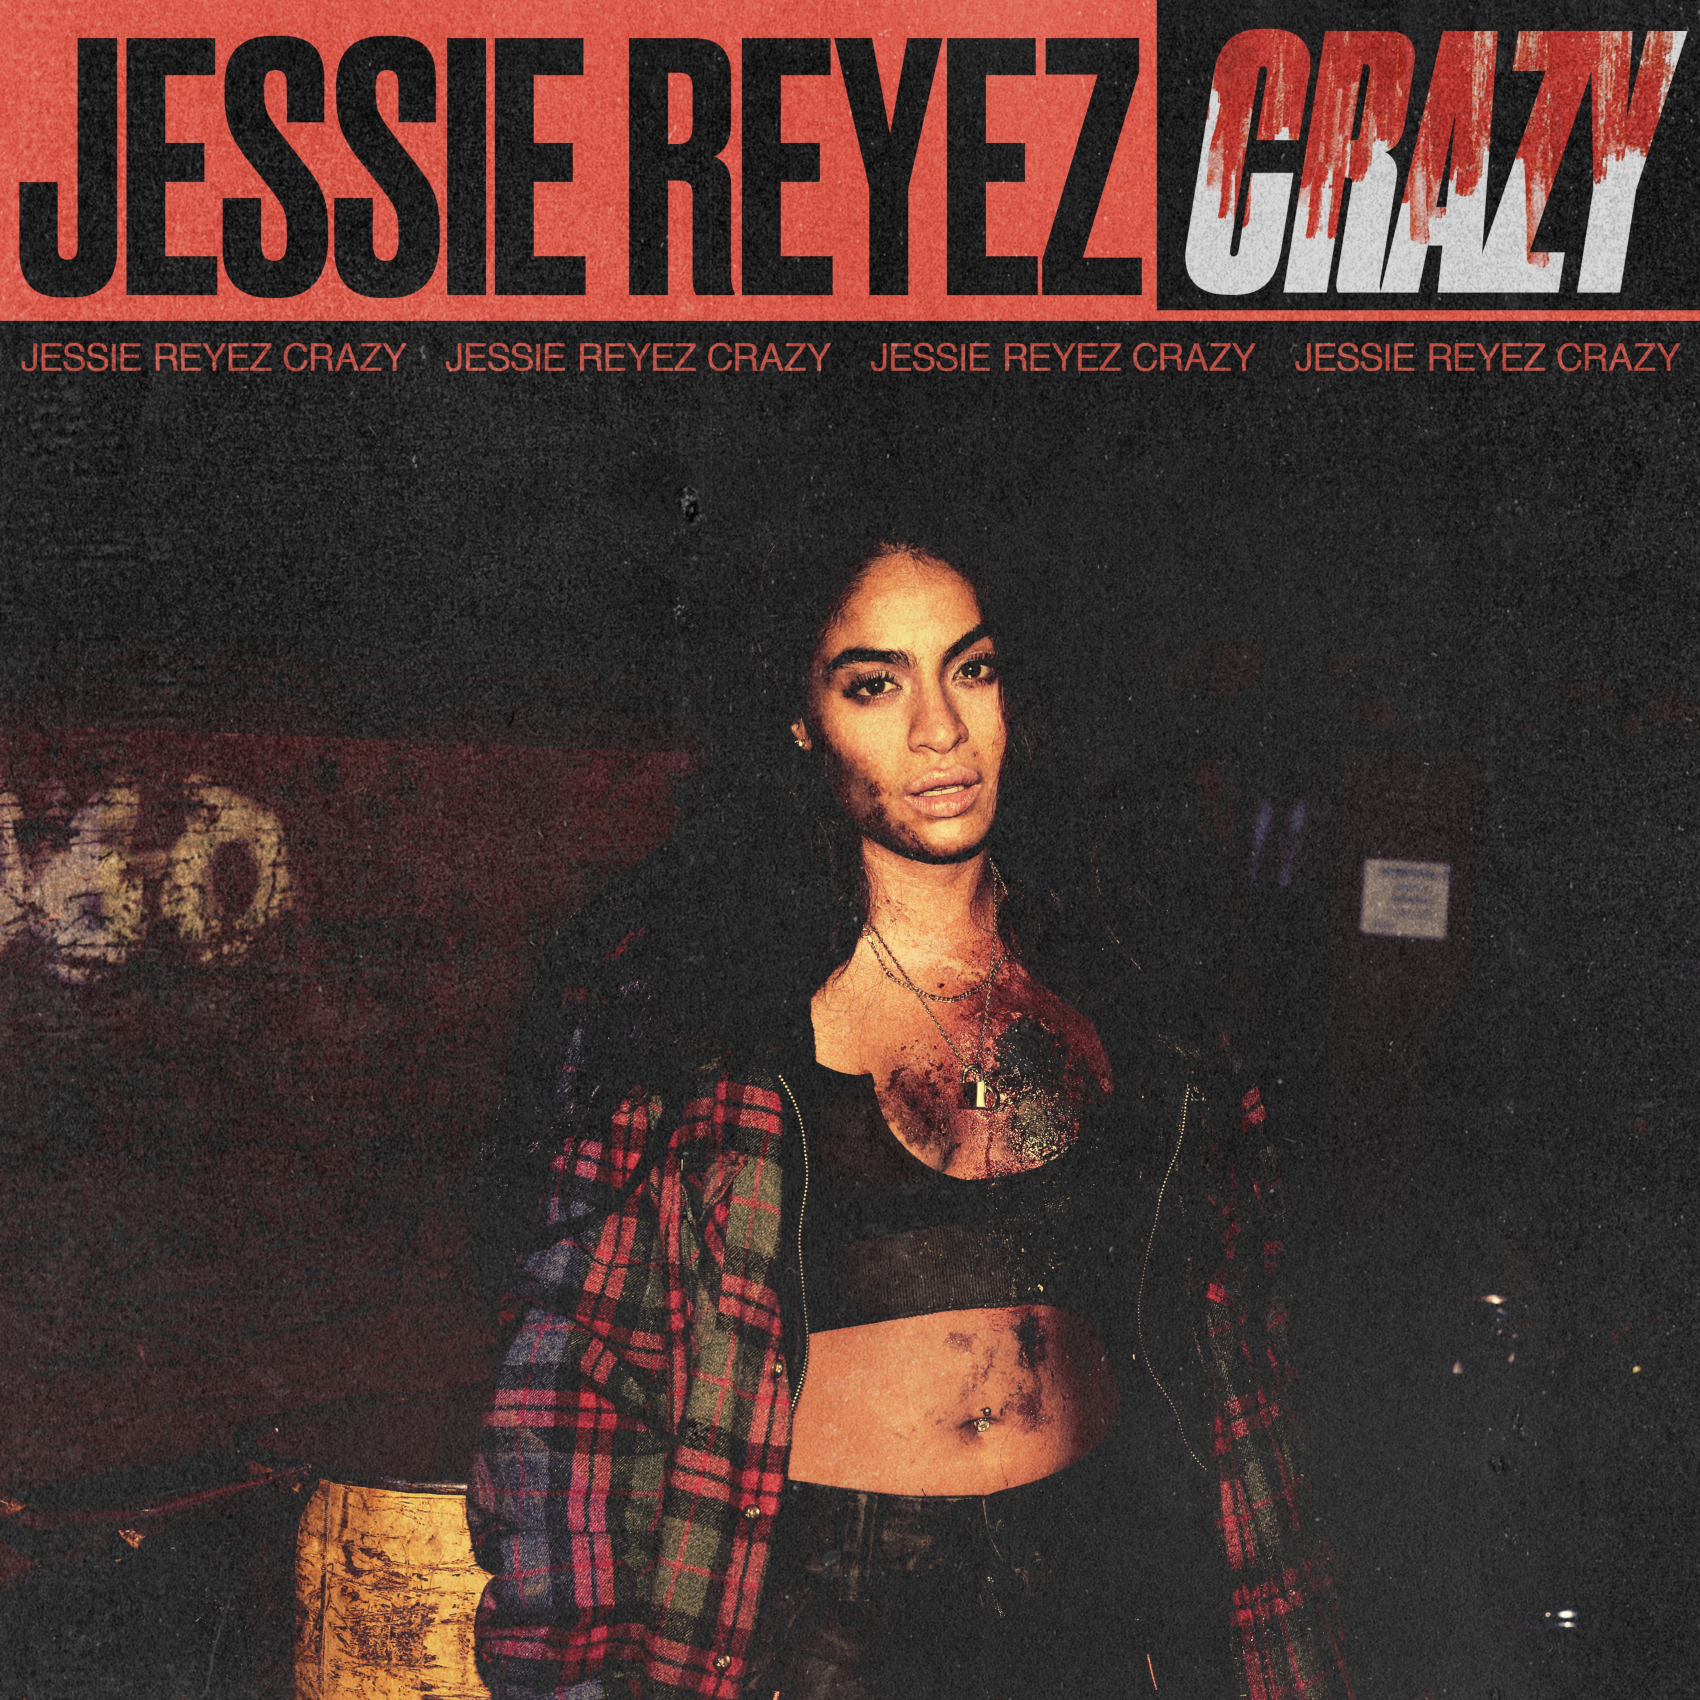 Jessie Reyez zapowiada debiutancki album utworem Crazy